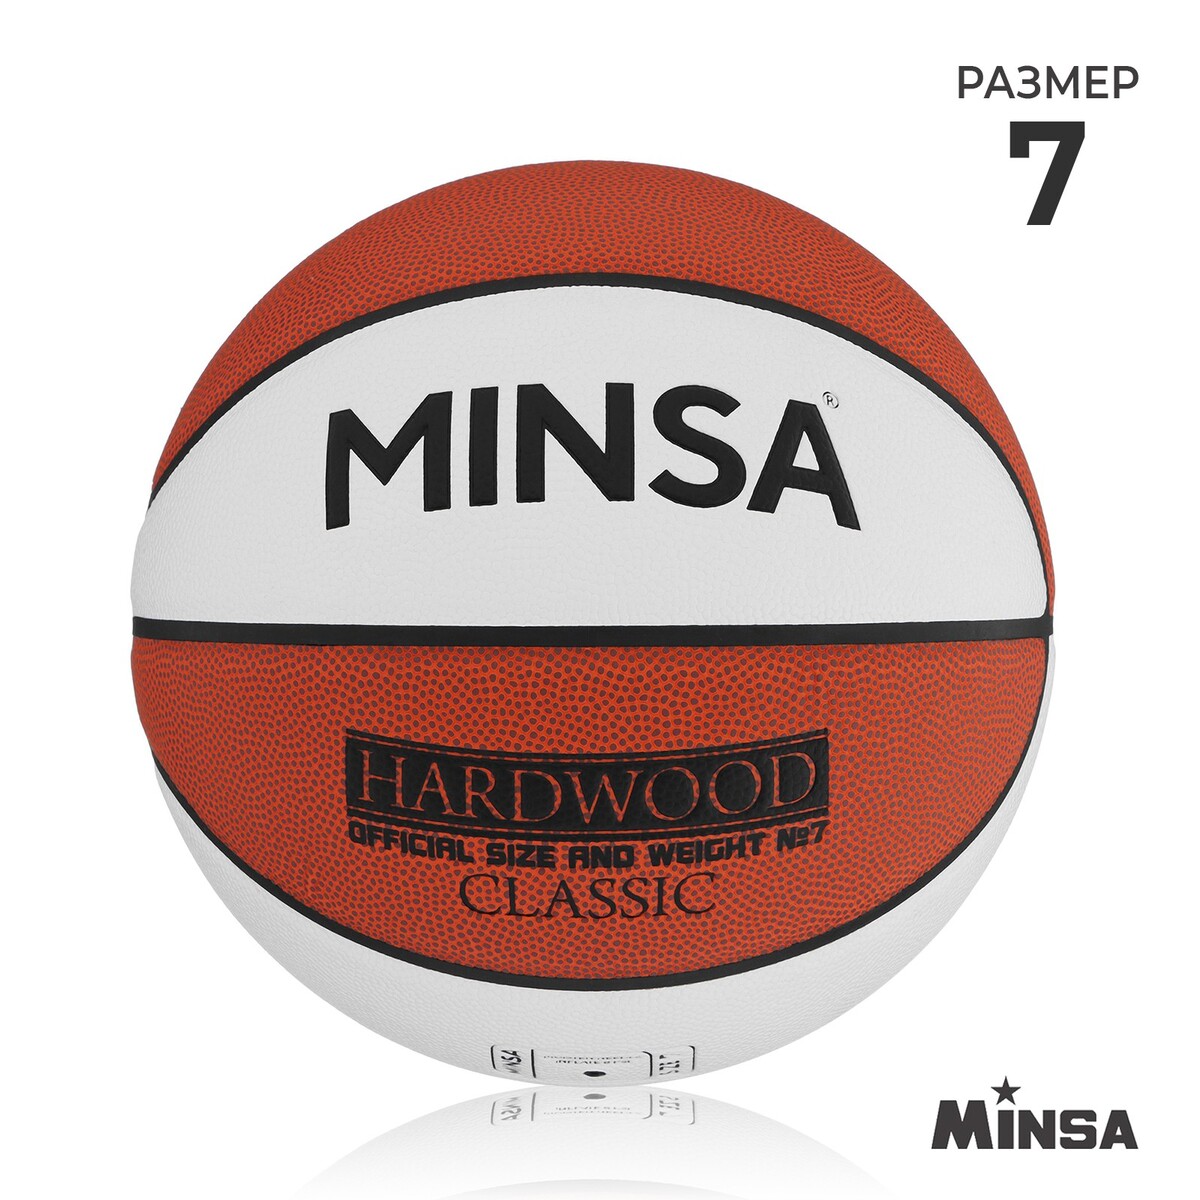 Баскетбольный мяч minsa hardwood classic, pu, клееный, 8 панелей, р. 7 мяч баскетбольный minsa street пвх клееный 8 панелей р 7